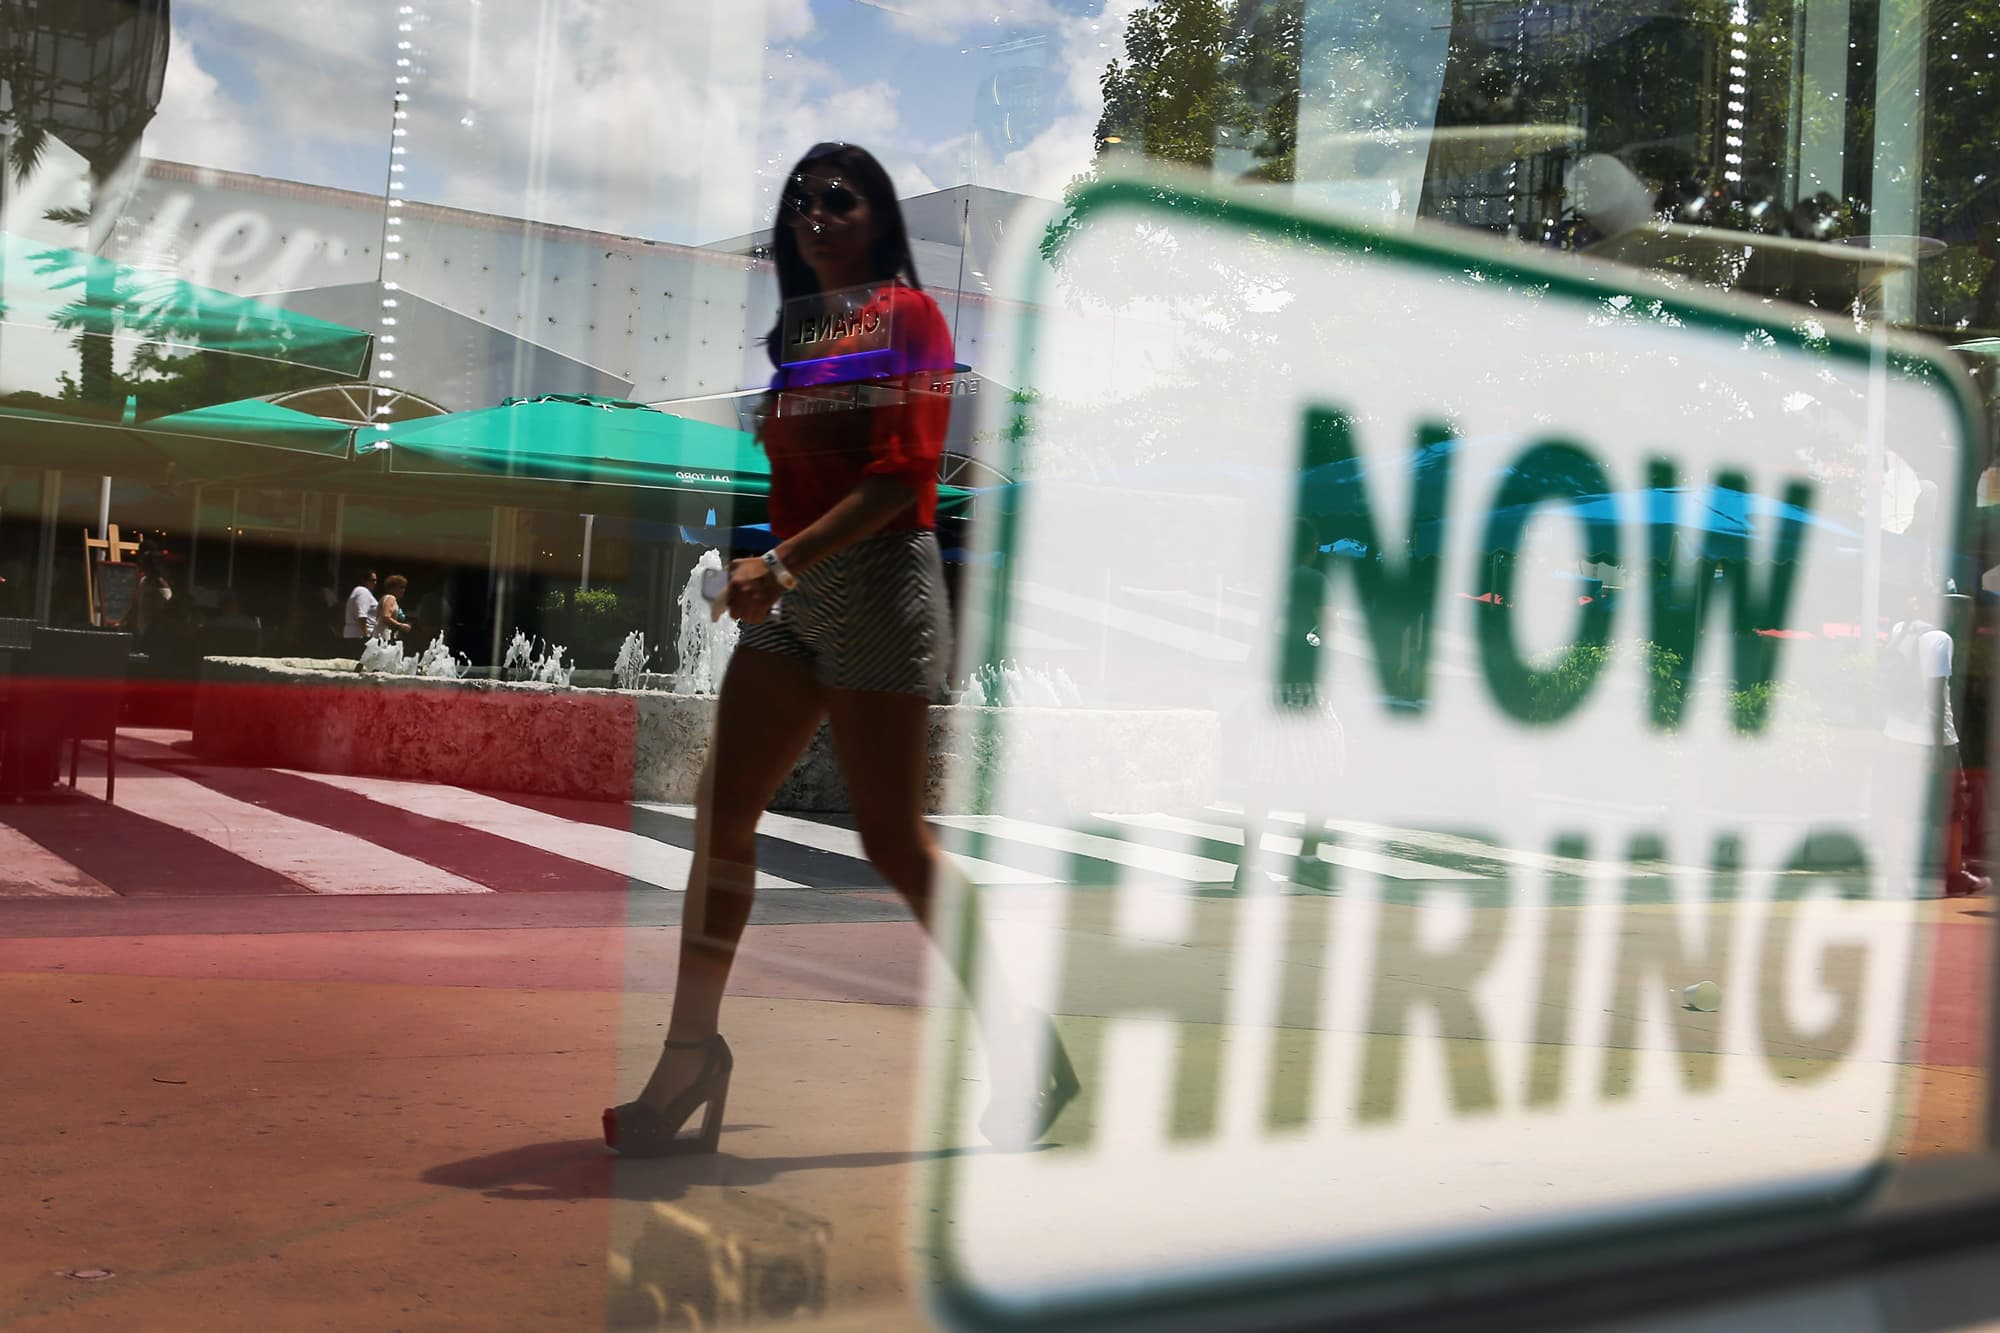 Los reclamos por desempleo alcanzan un nuevo mínimo pandémico, mientras que la manufactura de Nueva York alcanza un récord